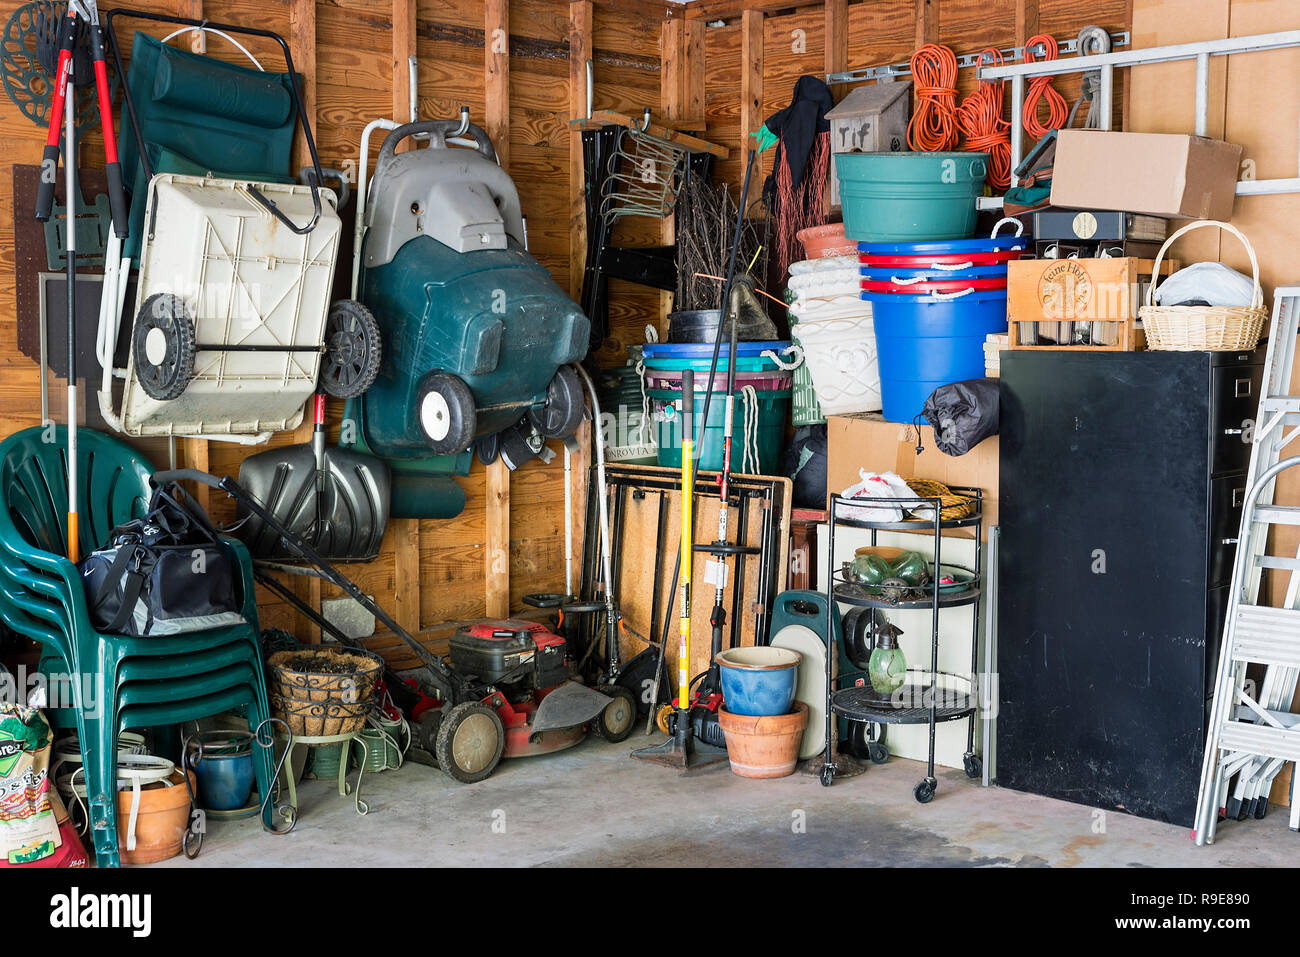 Desordenado garaje interior de almacenamiento. Foto de stock